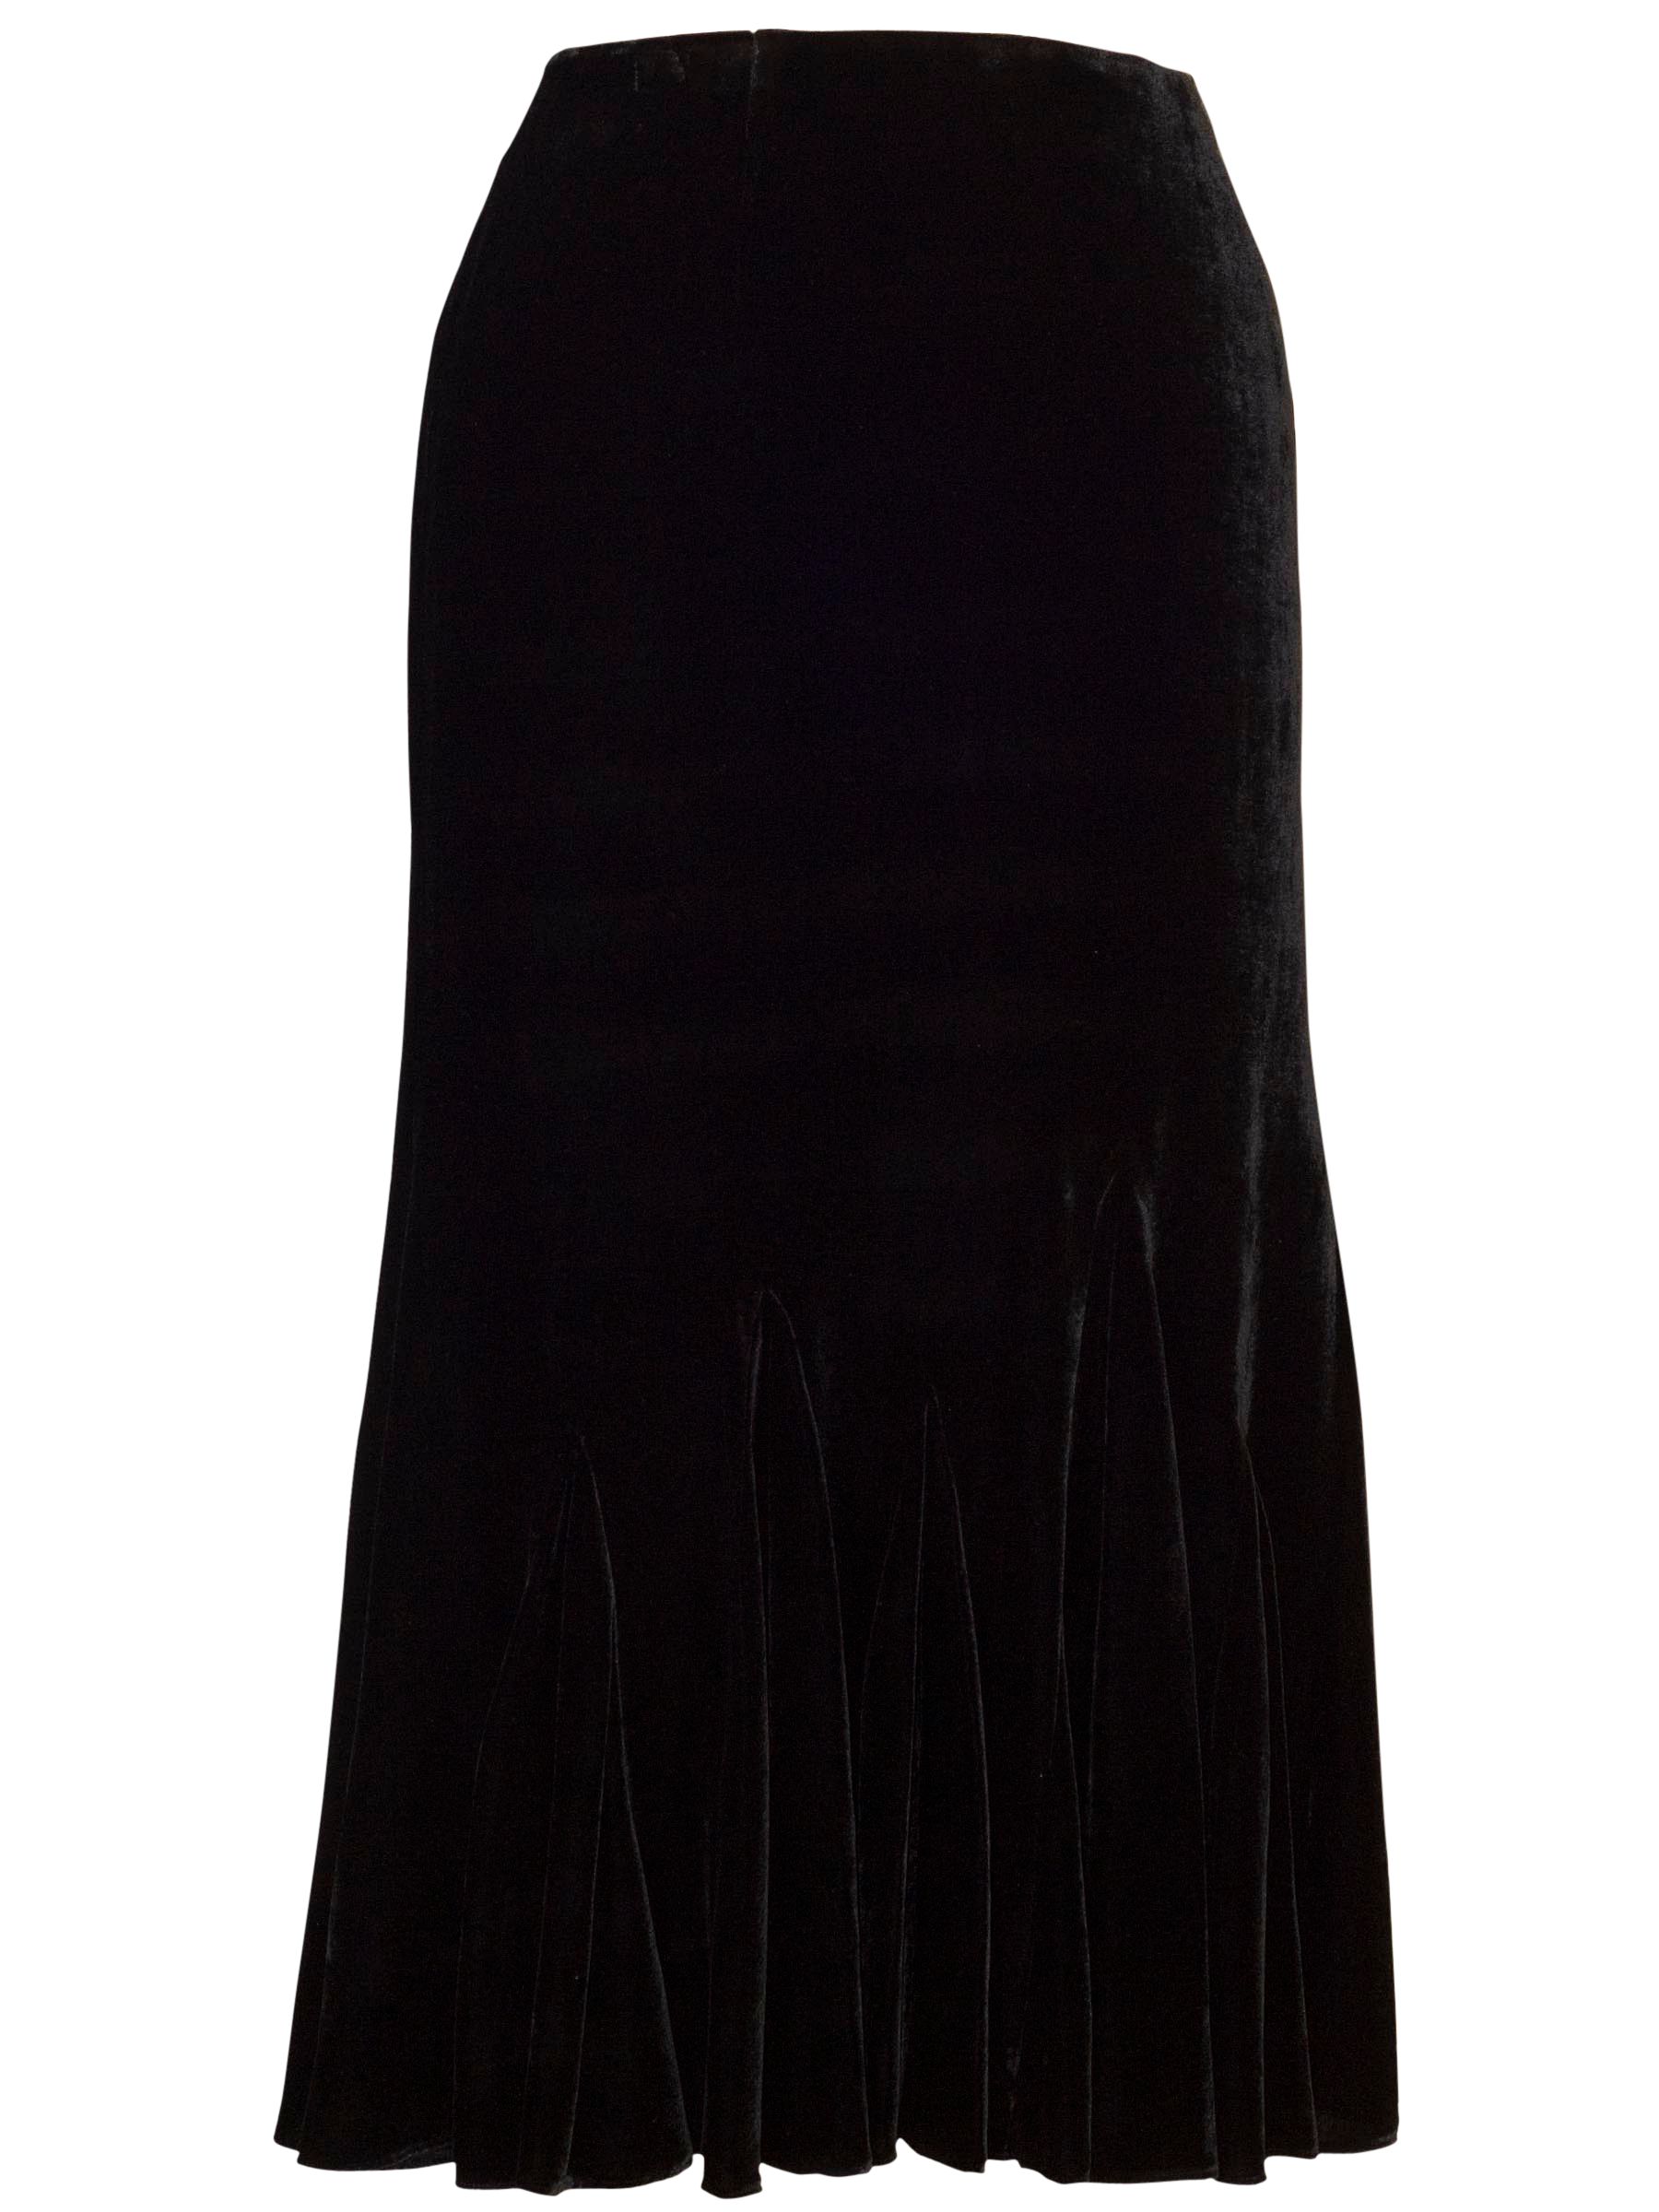 Chesca Velvet Godet Skirt, Black at John Lewis